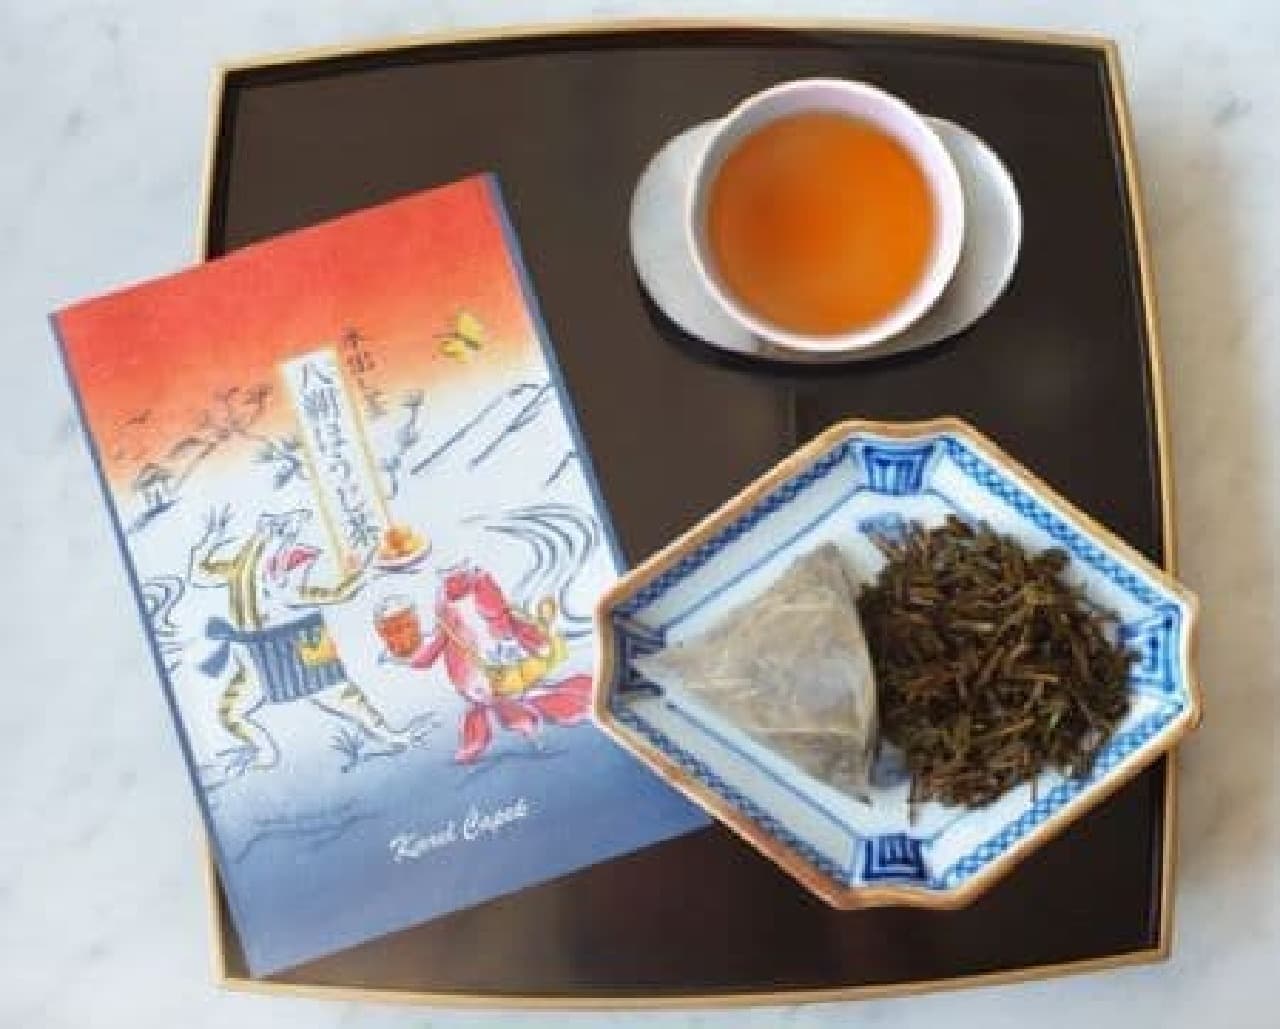 八朔ほうじ茶は、福岡県奥八女星野村の八女ほうじ茶に、みずみずしい八朔フレーバーが加えられたお茶